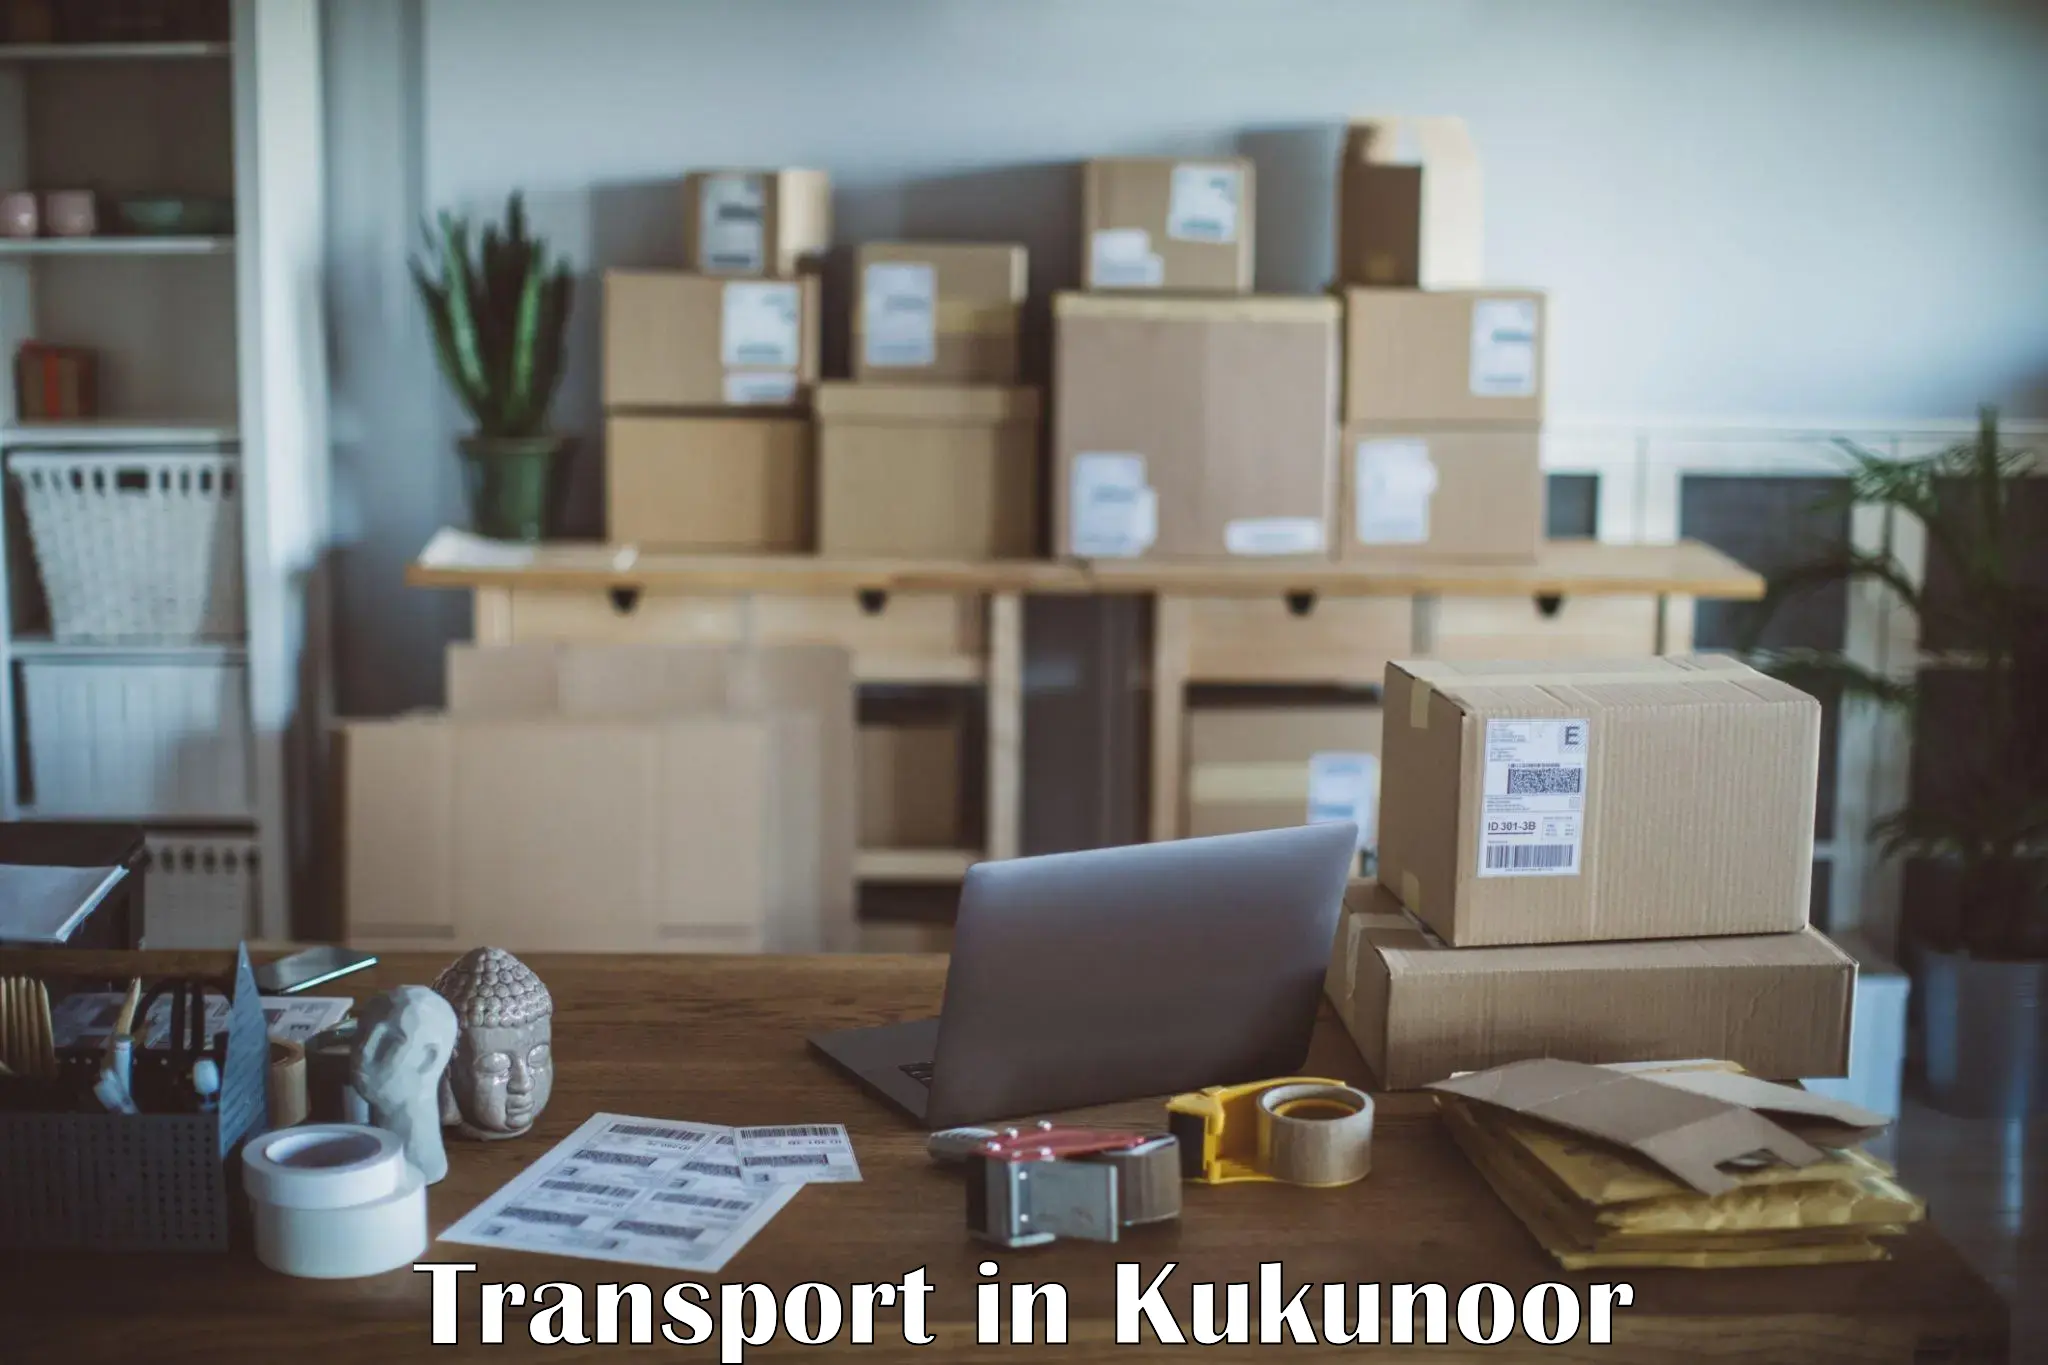 Transport services in Kukunoor